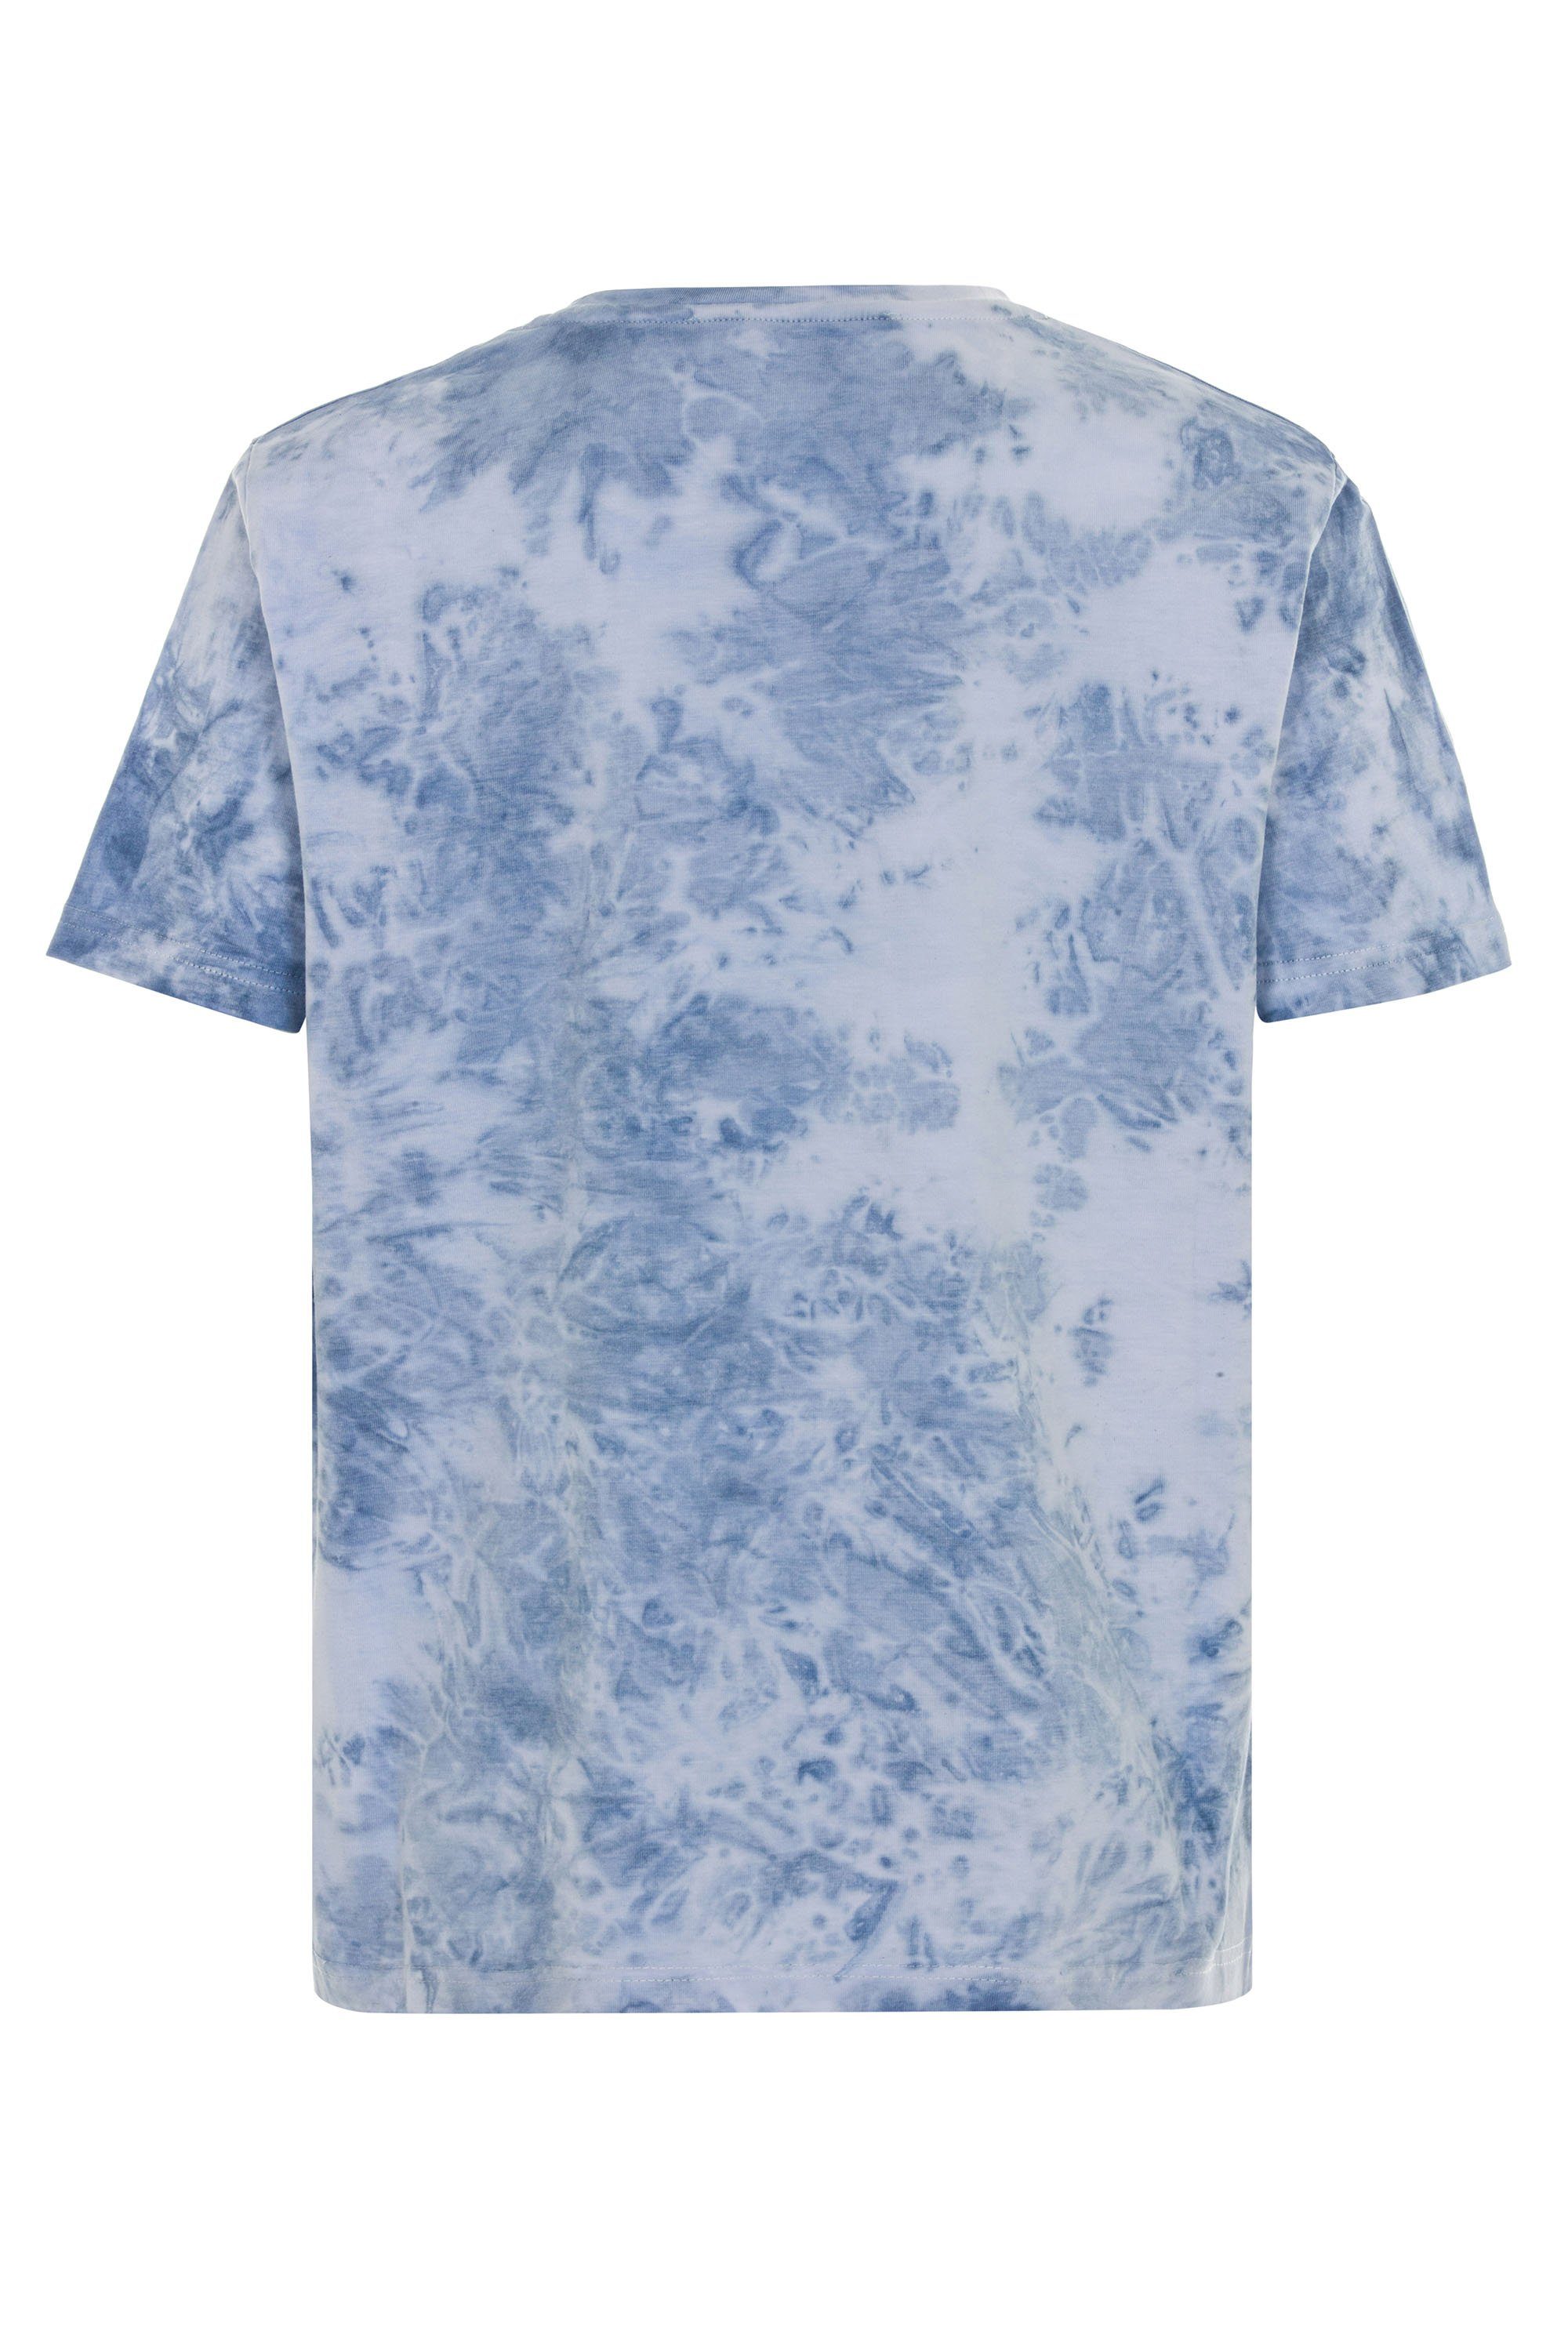 Cipo & Baxx T-Shirt Motorrad-Print mit blau coolem